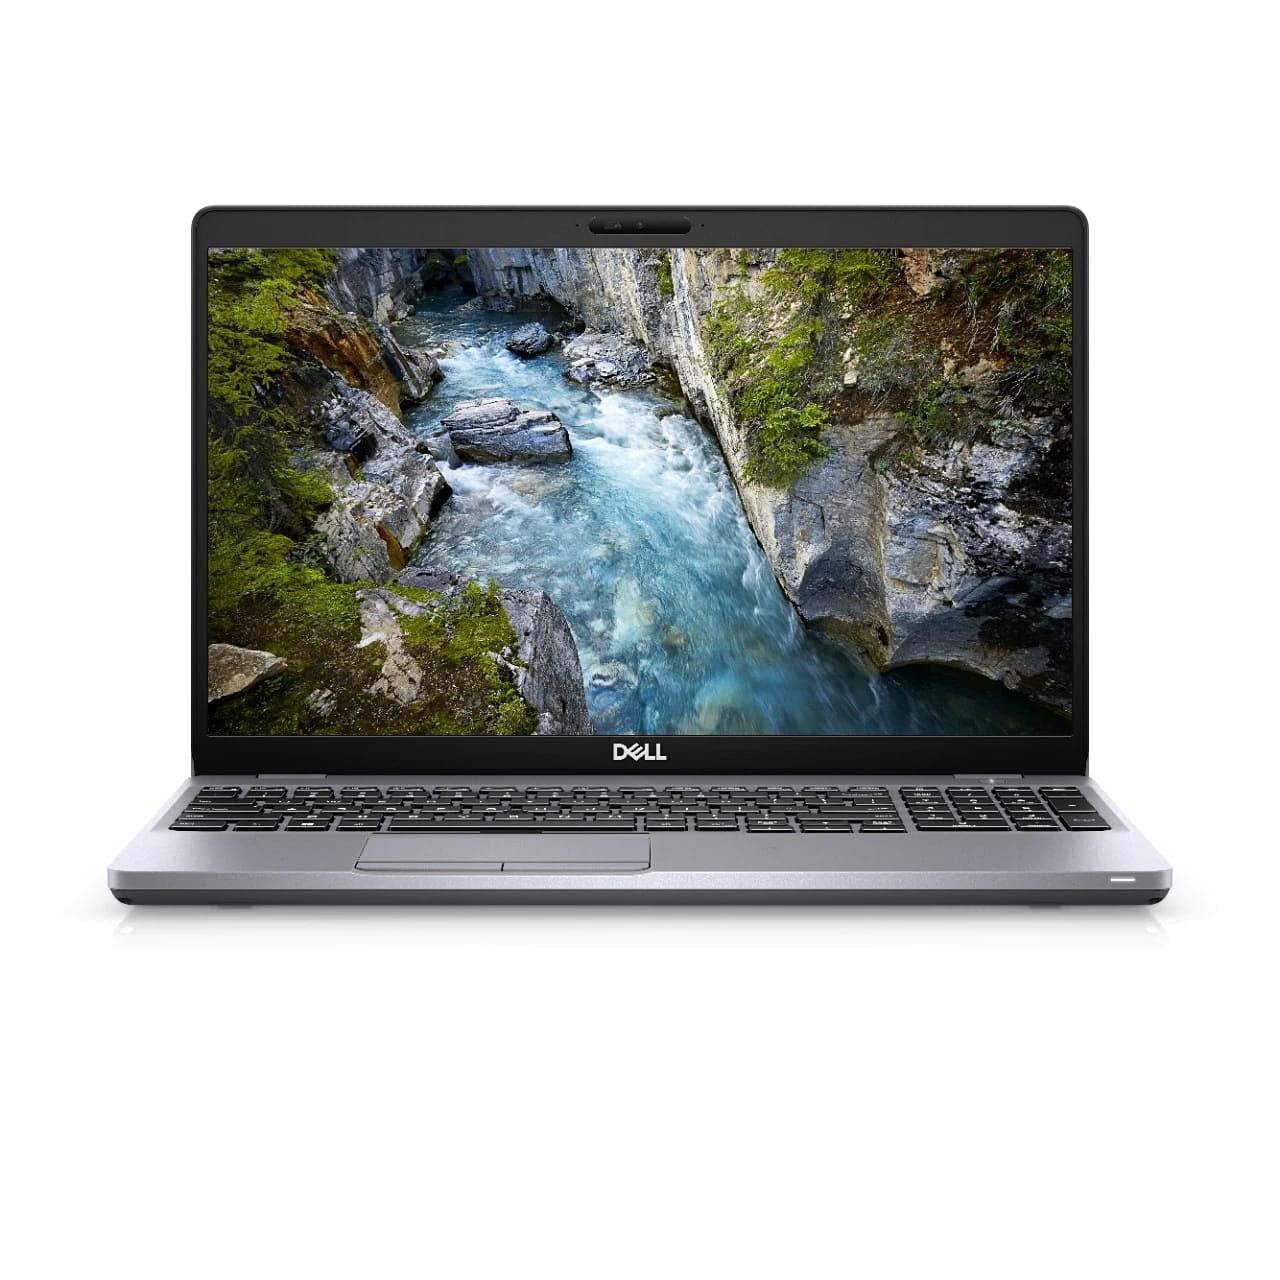 Dell Precision 3550 15.6-inch Laptop - Intel Core